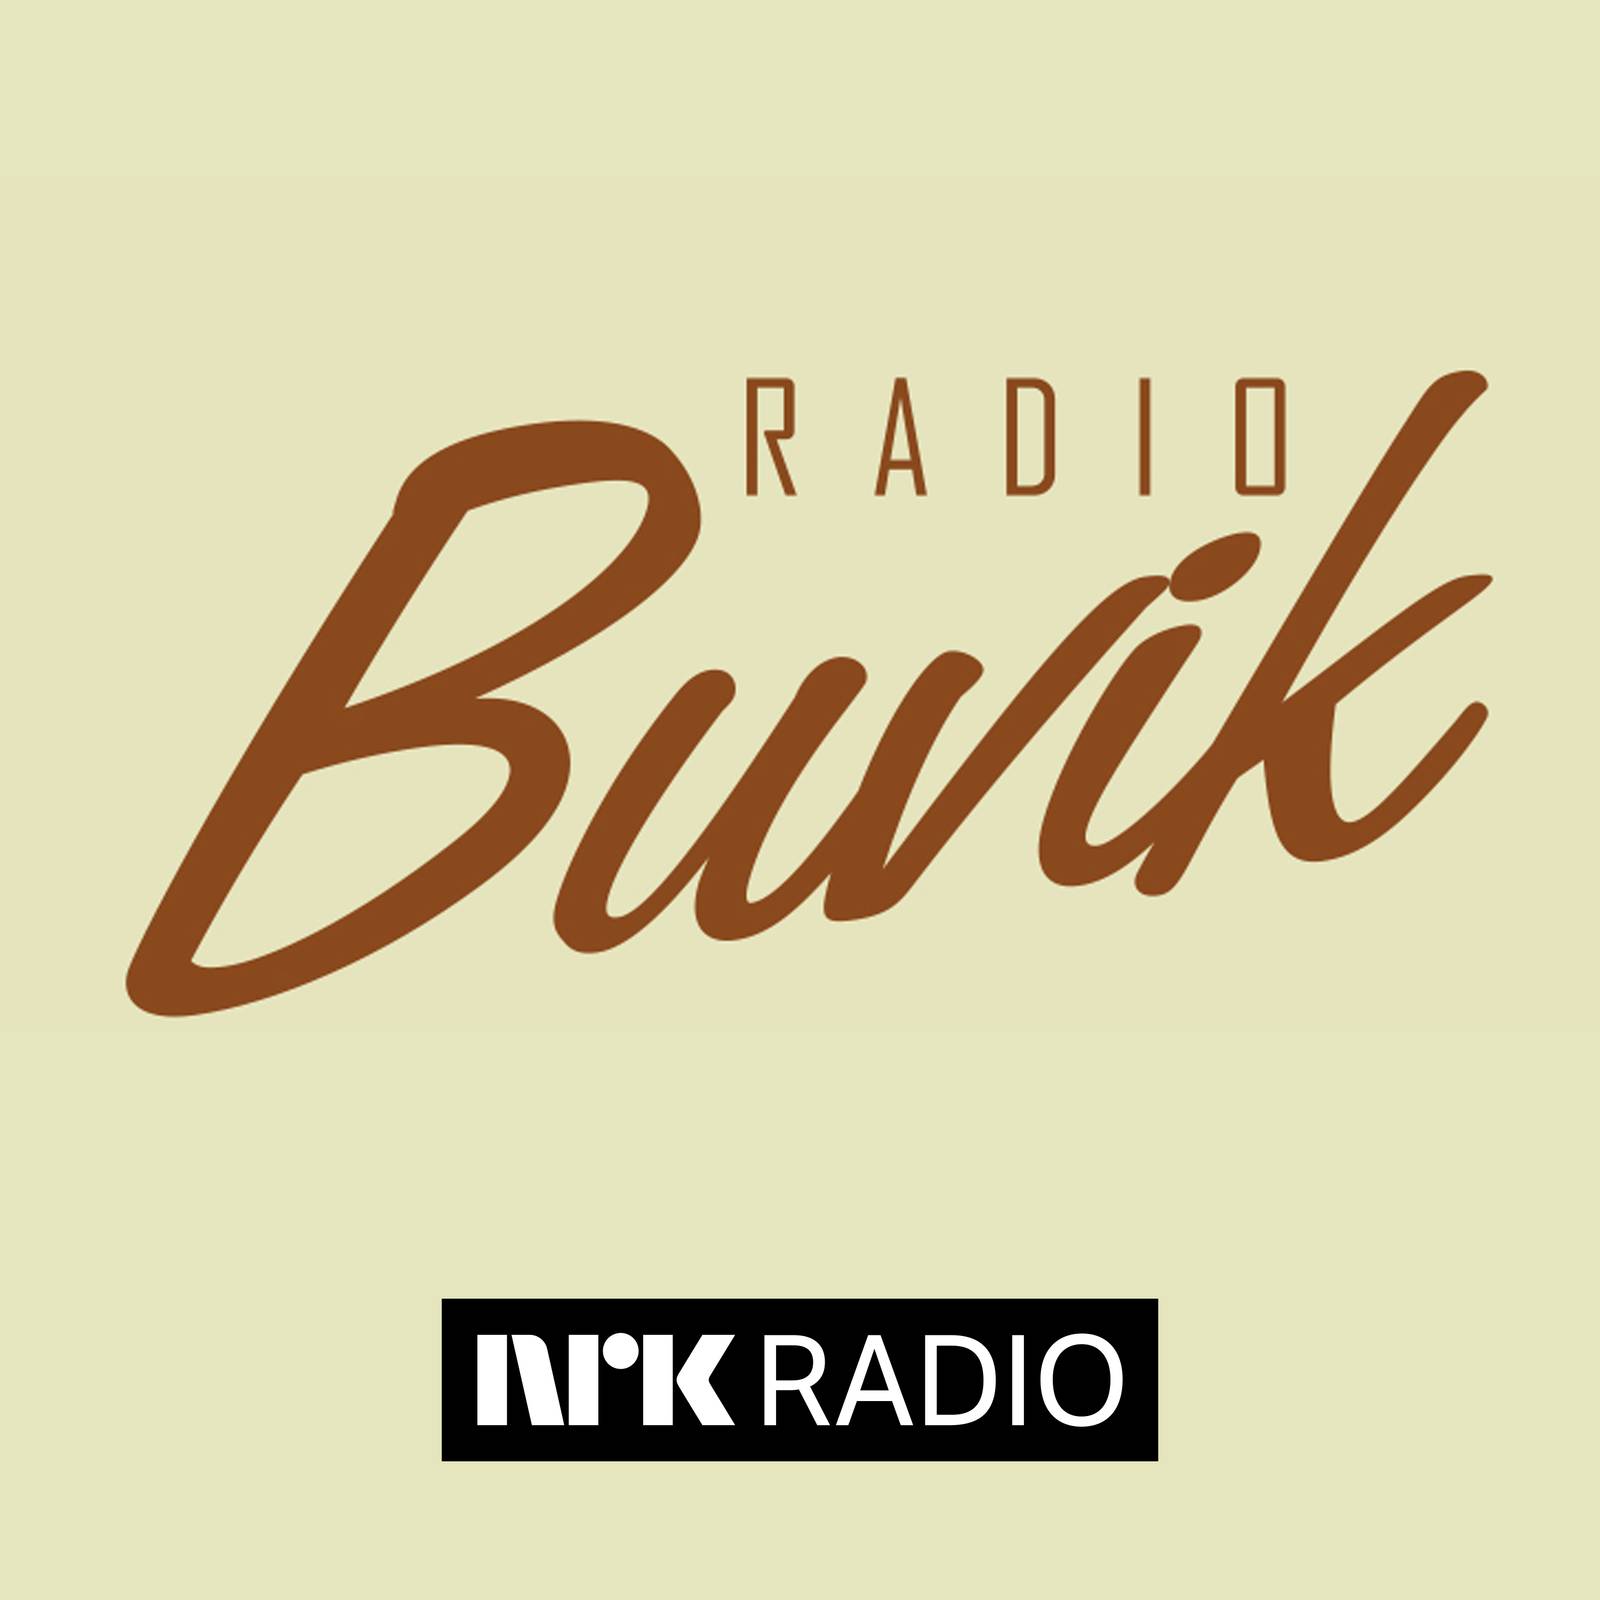 Radio Buvik